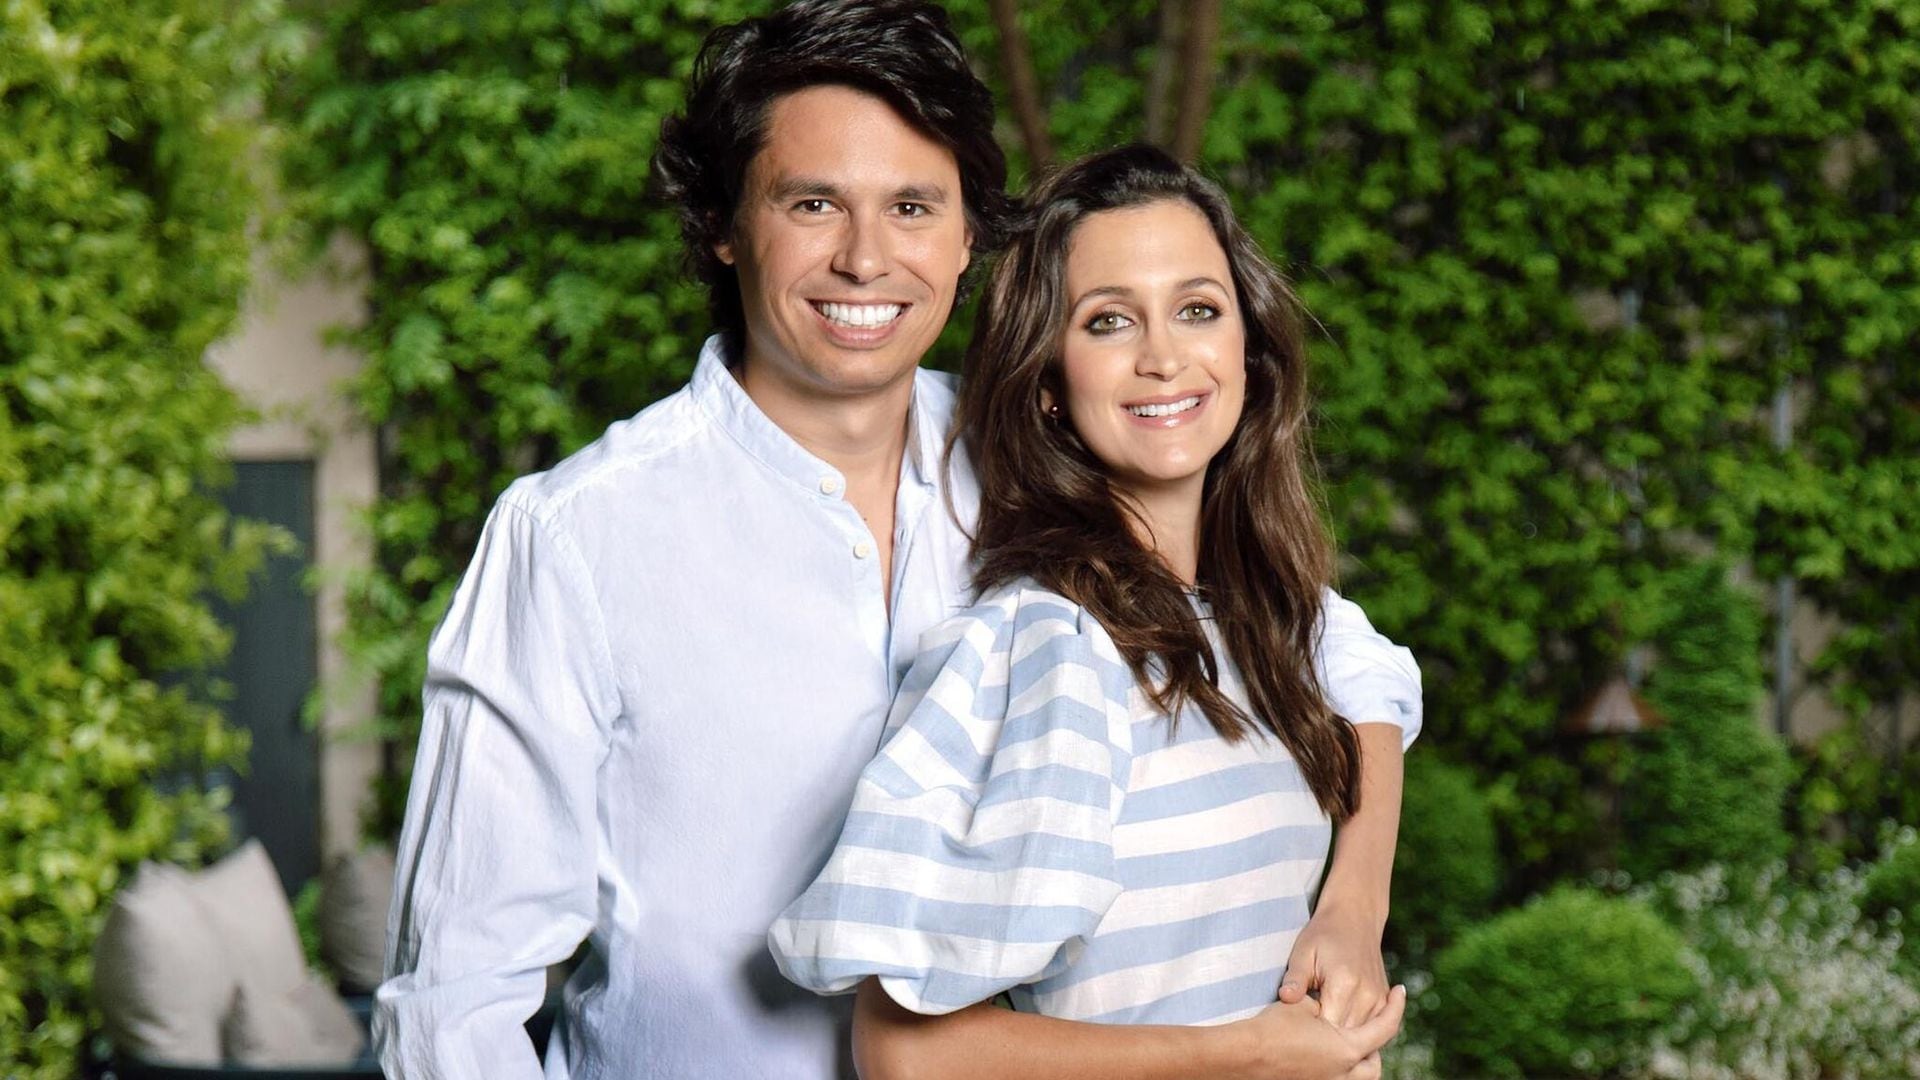 La familia Preysler crece: Álvaro Castillejo será padre el próximo otoño junto a su mujer, Cristina Fernández